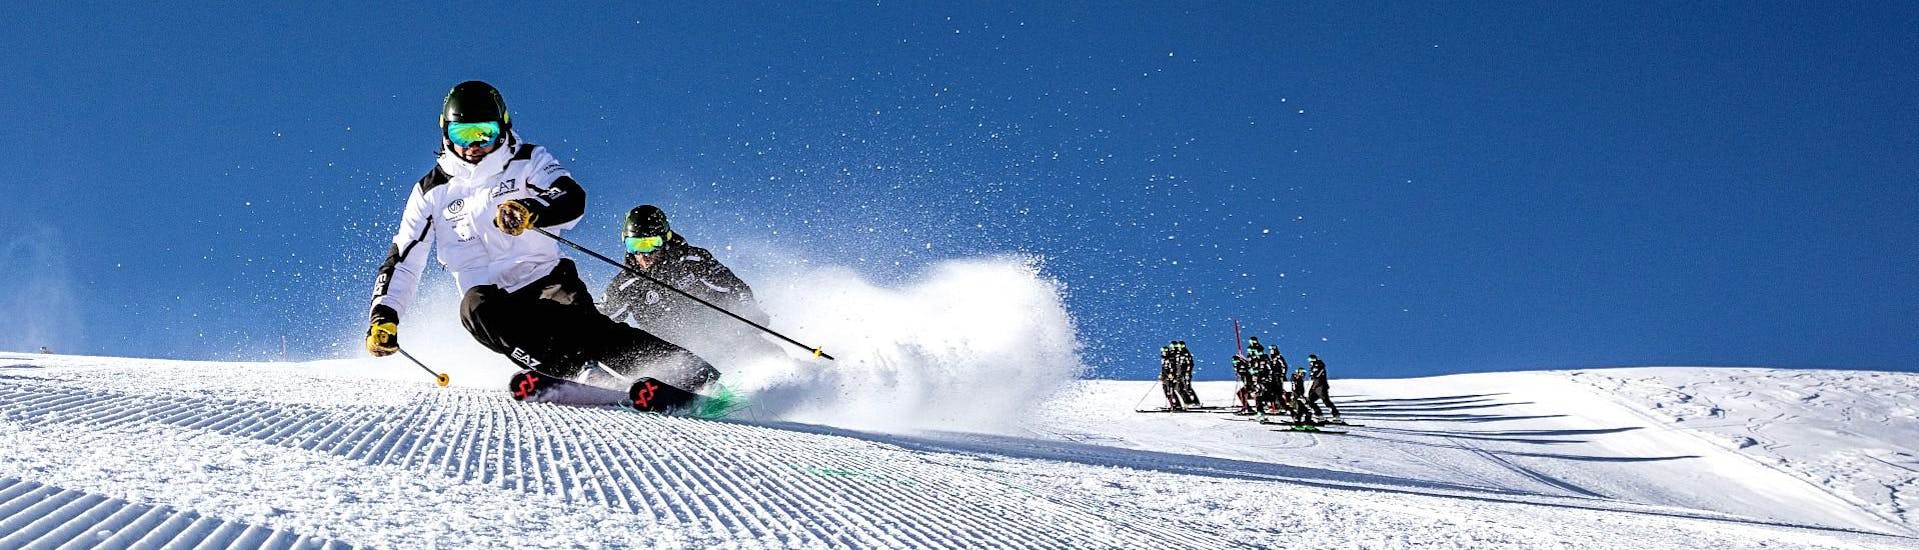 Cours de ski pour Adolescents (dès 15 ans) et Adultes pour Skieurs Expérimentés.